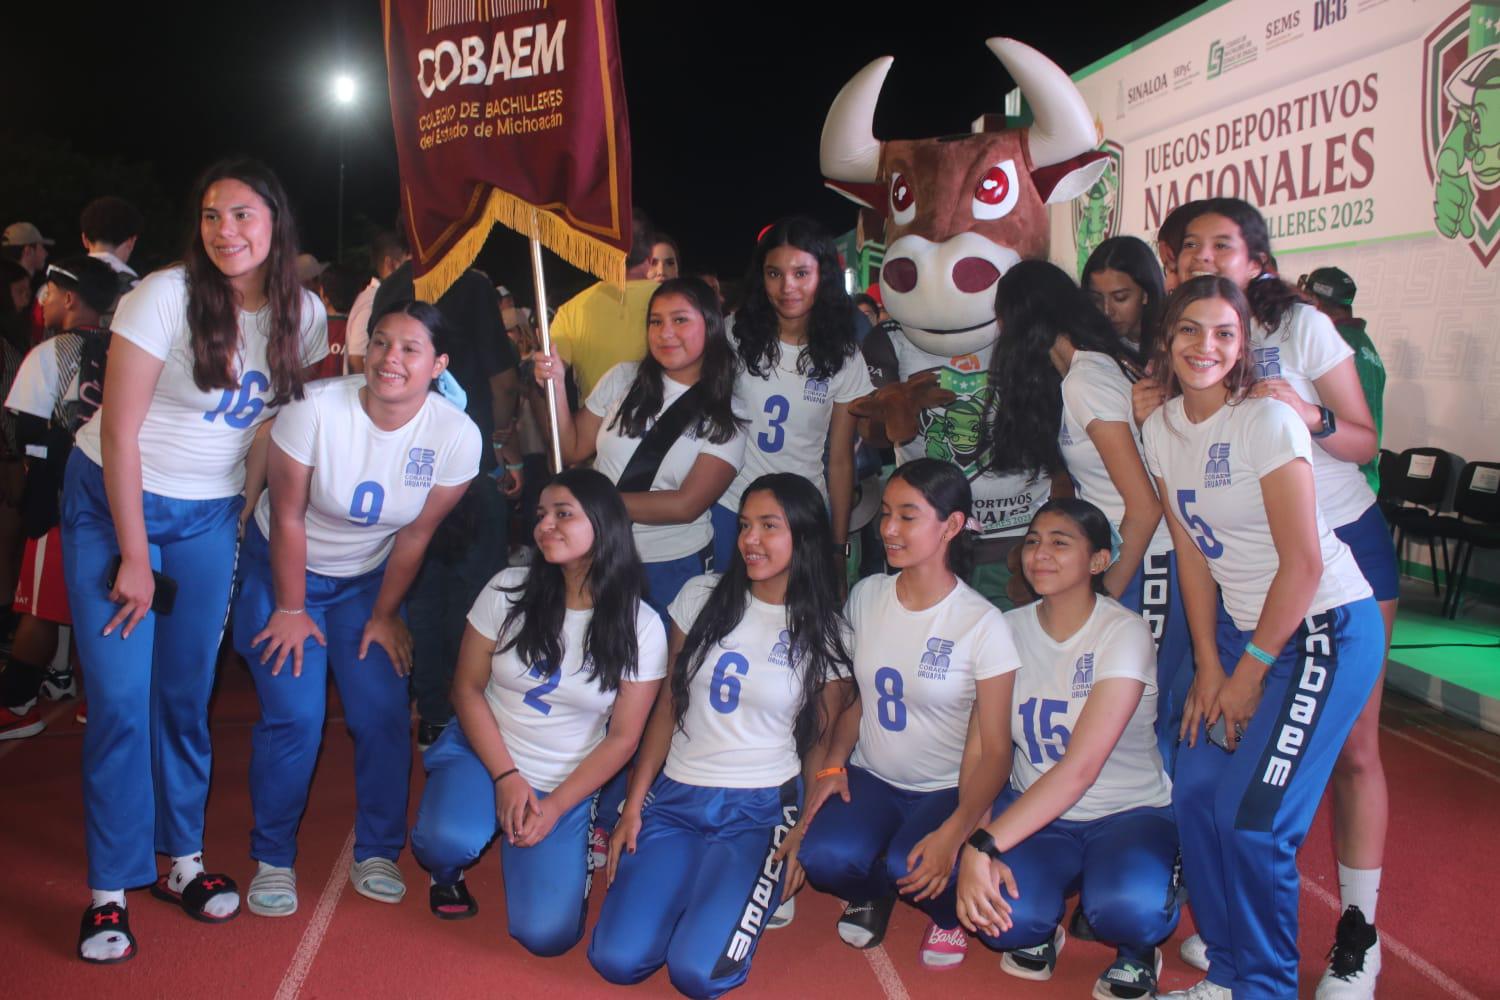 $!Inician los Juegos Deportivos Nacionales Colegios de Bachilleres en Mazatlán